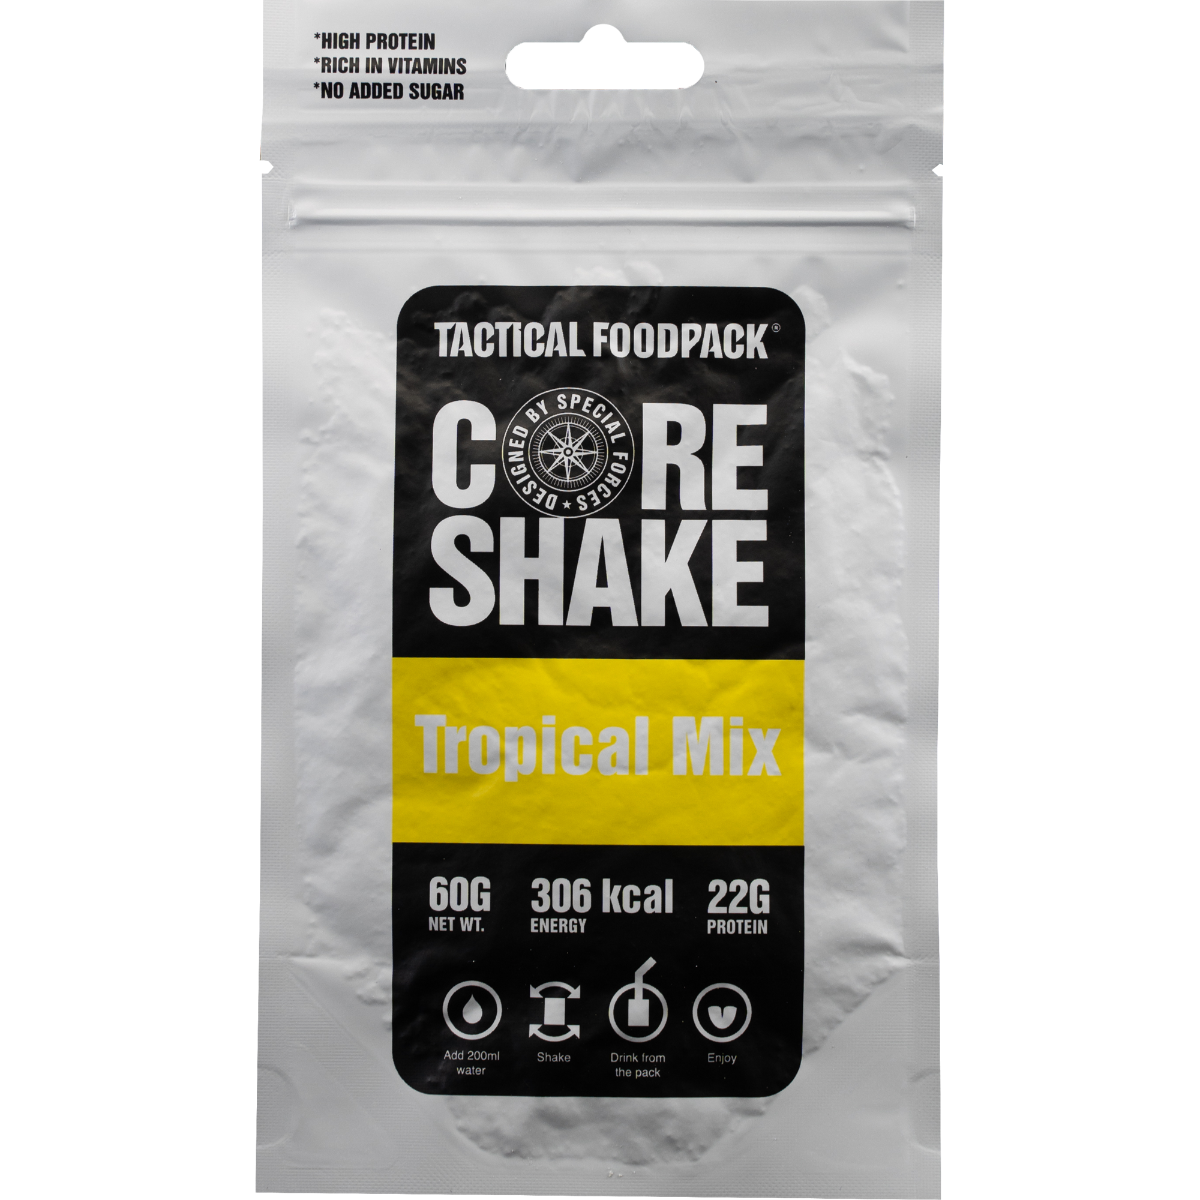 Povečajte svojo zmogljivost in dosežke z Tactical Foodpack Core Shake Tropical Mix - visoko proteinskim superfood smutijem za prehrano mišic. Uživajte v okusu banane, ananasa in dodanih beljakovin v prahu (kazein). Priprava je enostavna, brez glutena in primeren za vegetarijance. Izboljšajte svoje treninge in avanture na prostem z naravnimi sestavinami, ki ohranjajo hranila in vitamine. Naročite zdaj!